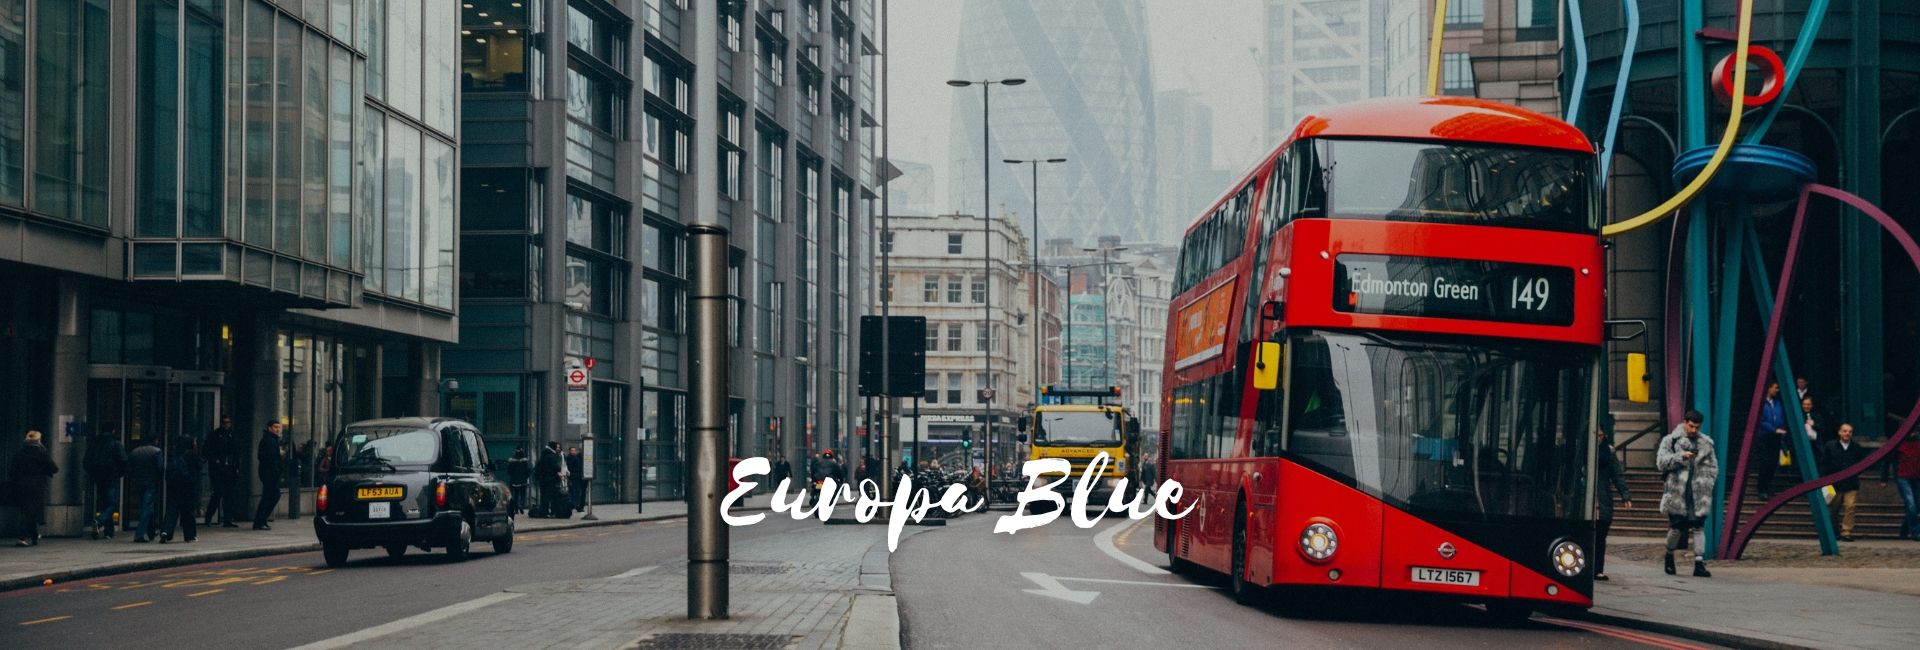 Viaje a AT-12113 Europa Blue